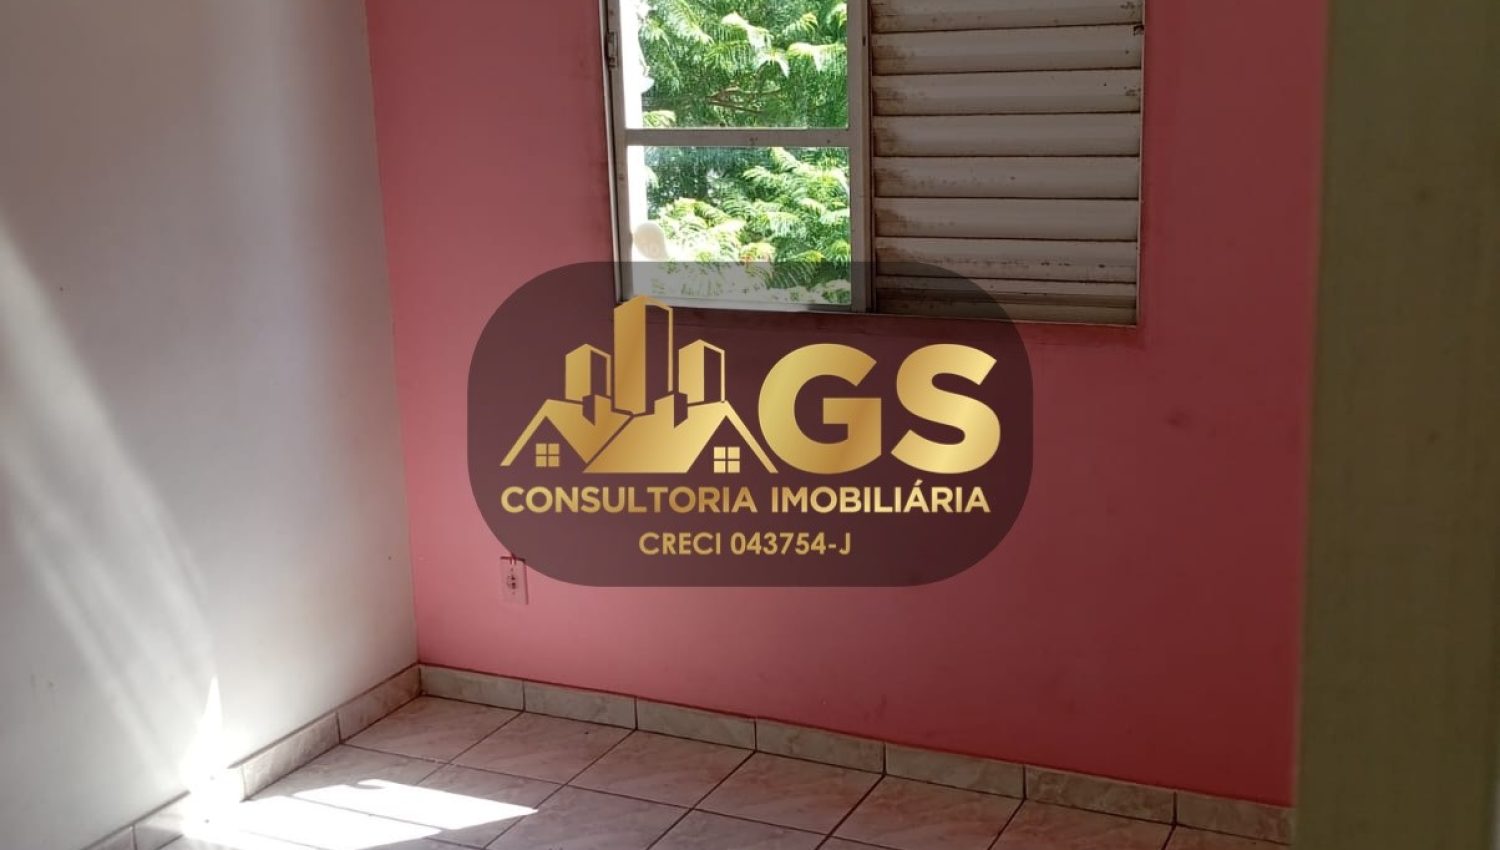 Apto Condomínio Petrópolis - Cód. 0132 (7)